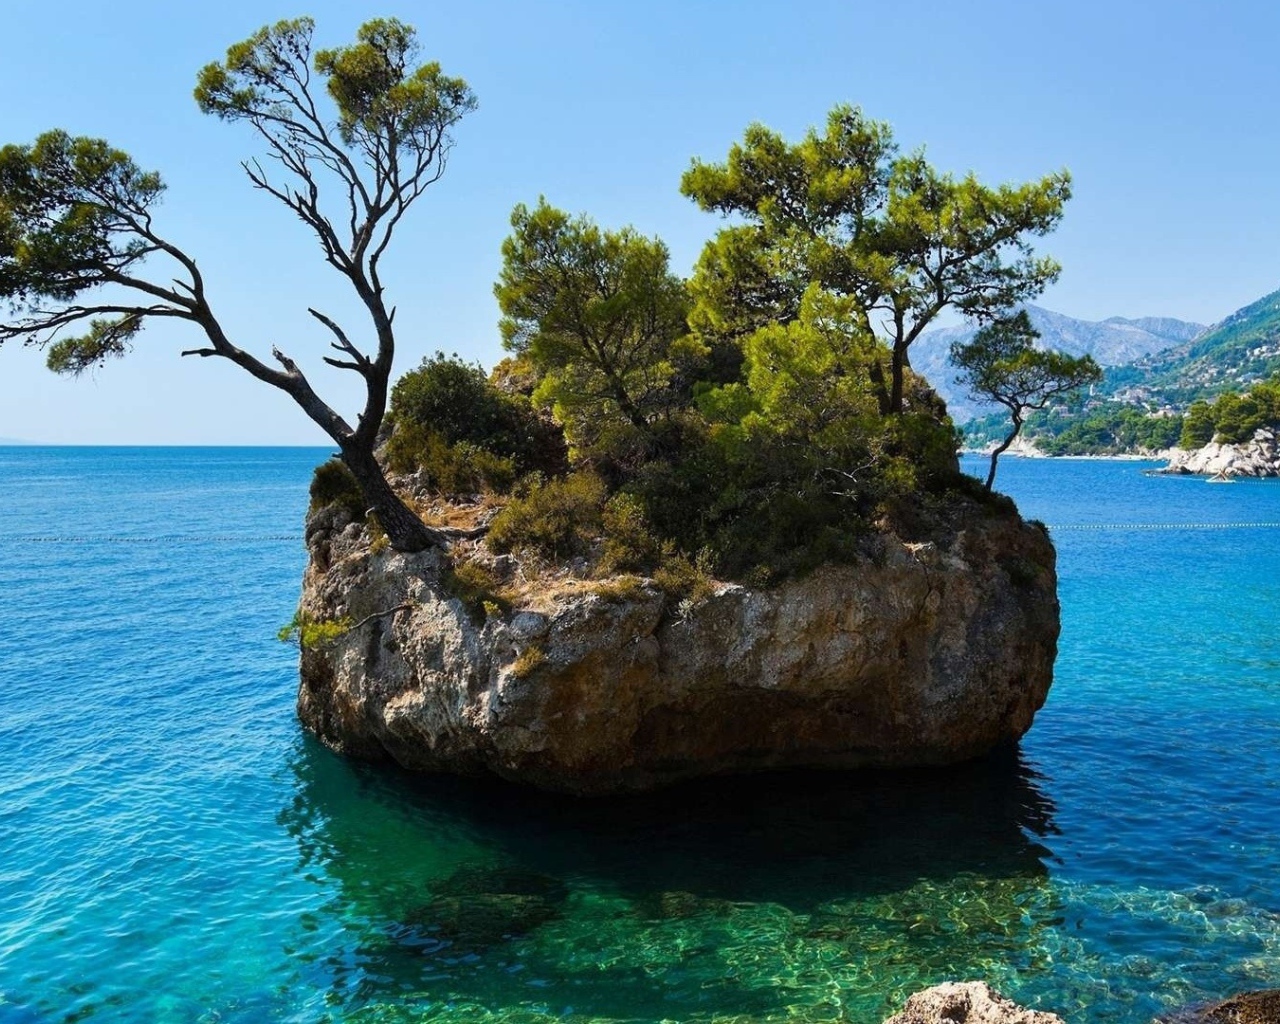 Каменный остров с деревьями